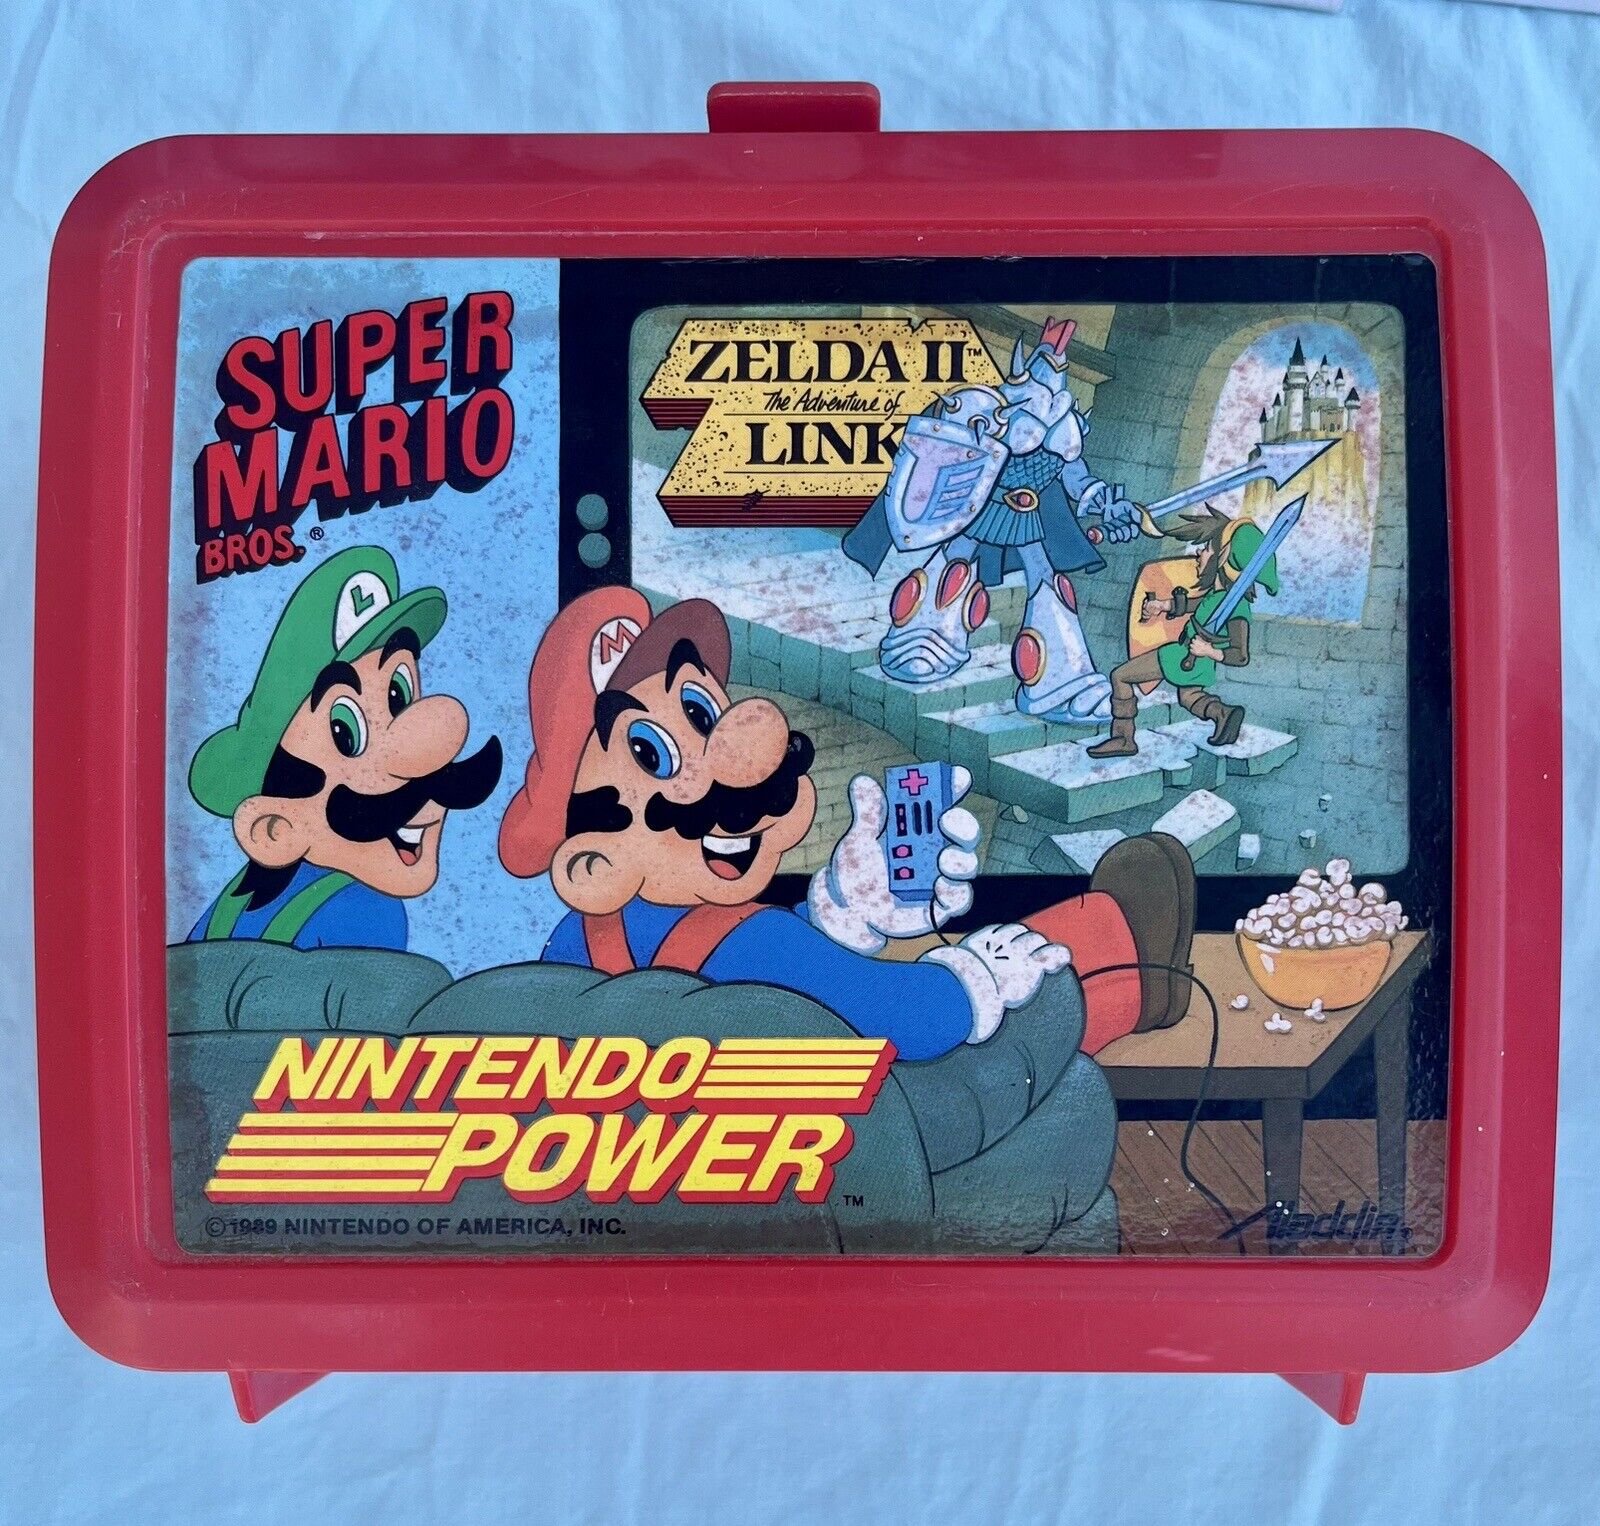 Vintage 1988 Nintendo Power Super Mario Bros 2 Zelda II Link Plastic Lunch Box